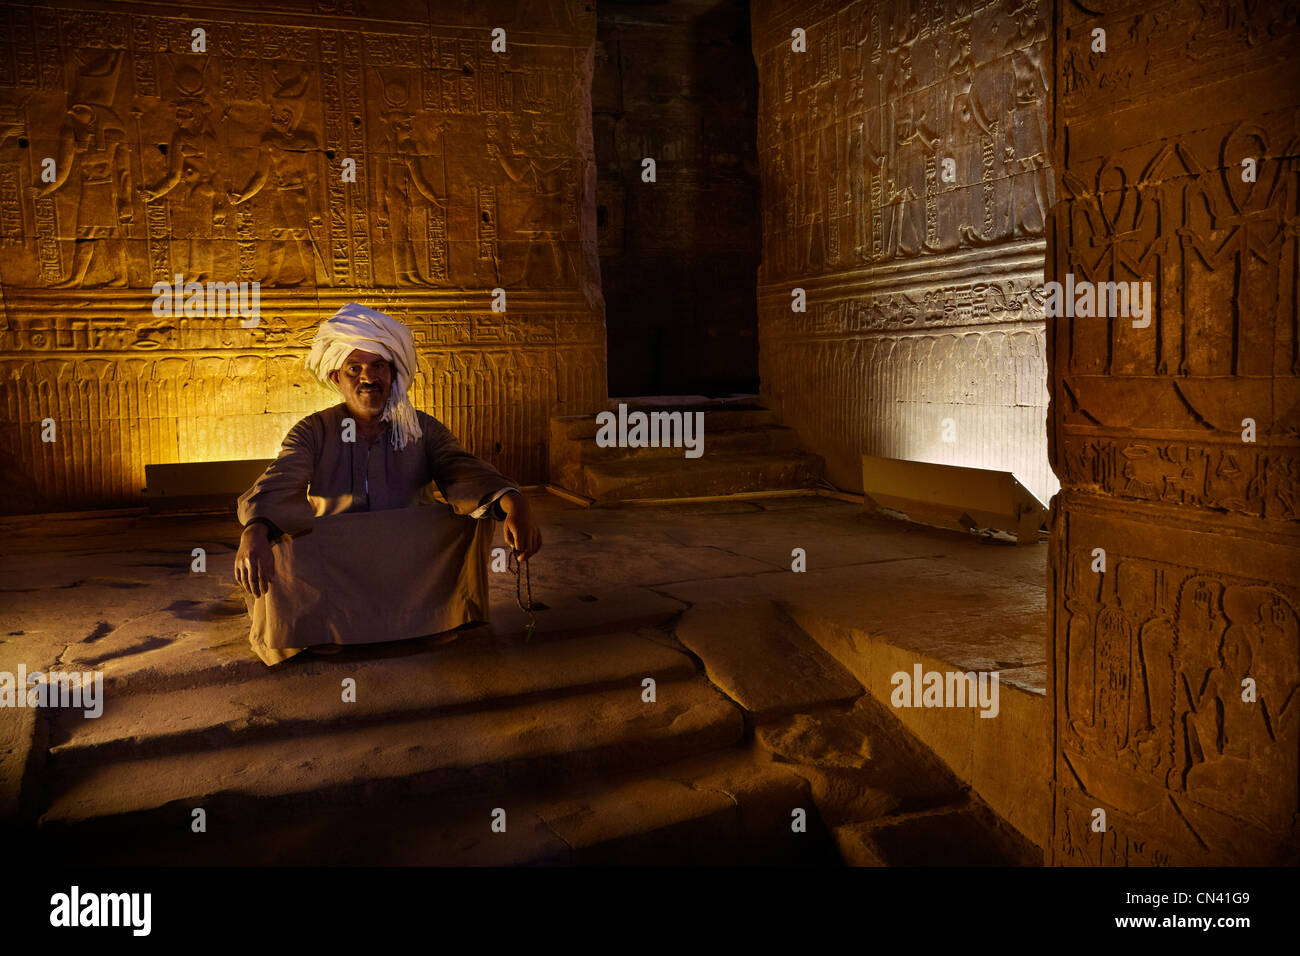 L'Egypte - Edfou, Temple d'Horus, portrait d'homme égyptien à l'intérieur du temple Banque D'Images